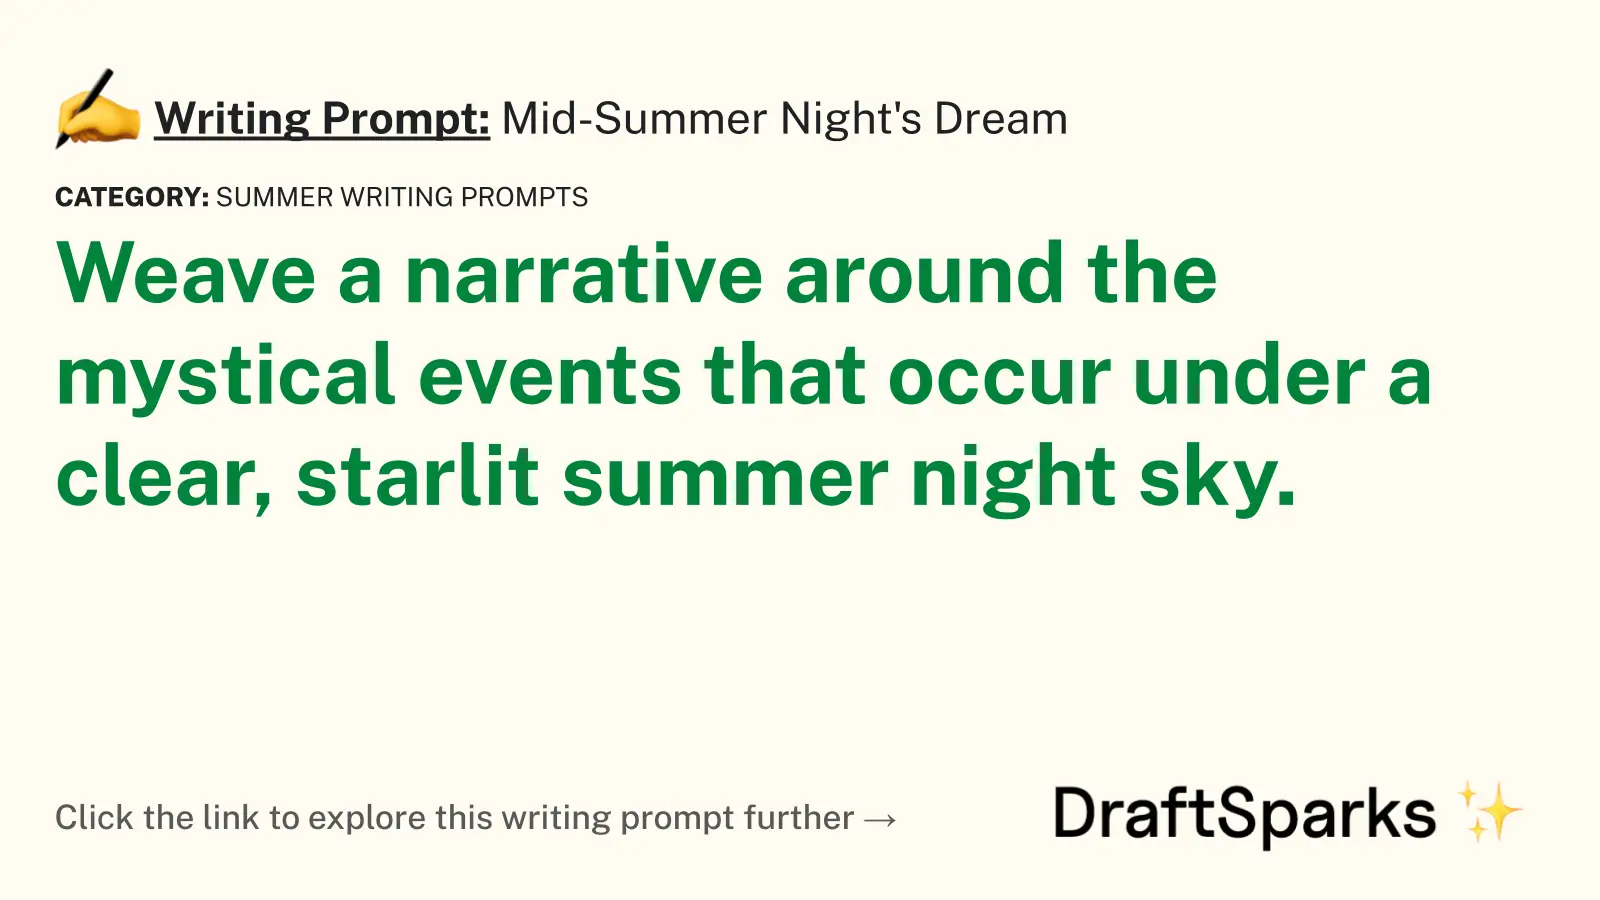 Mid-Summer Night’s Dream